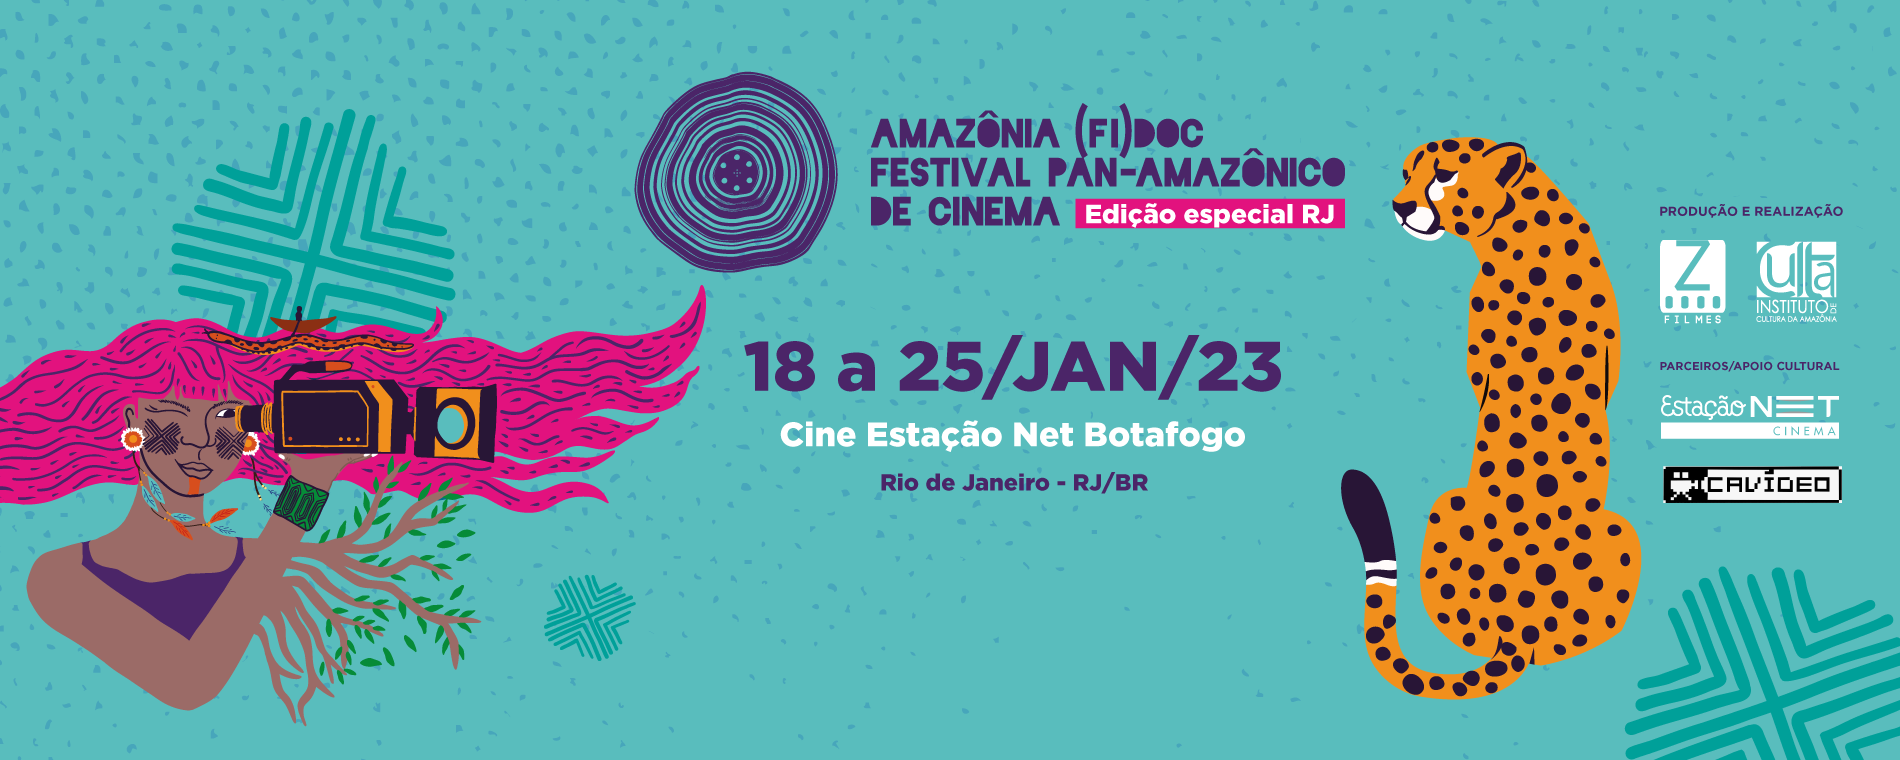 O Cinema de todas as amazonias